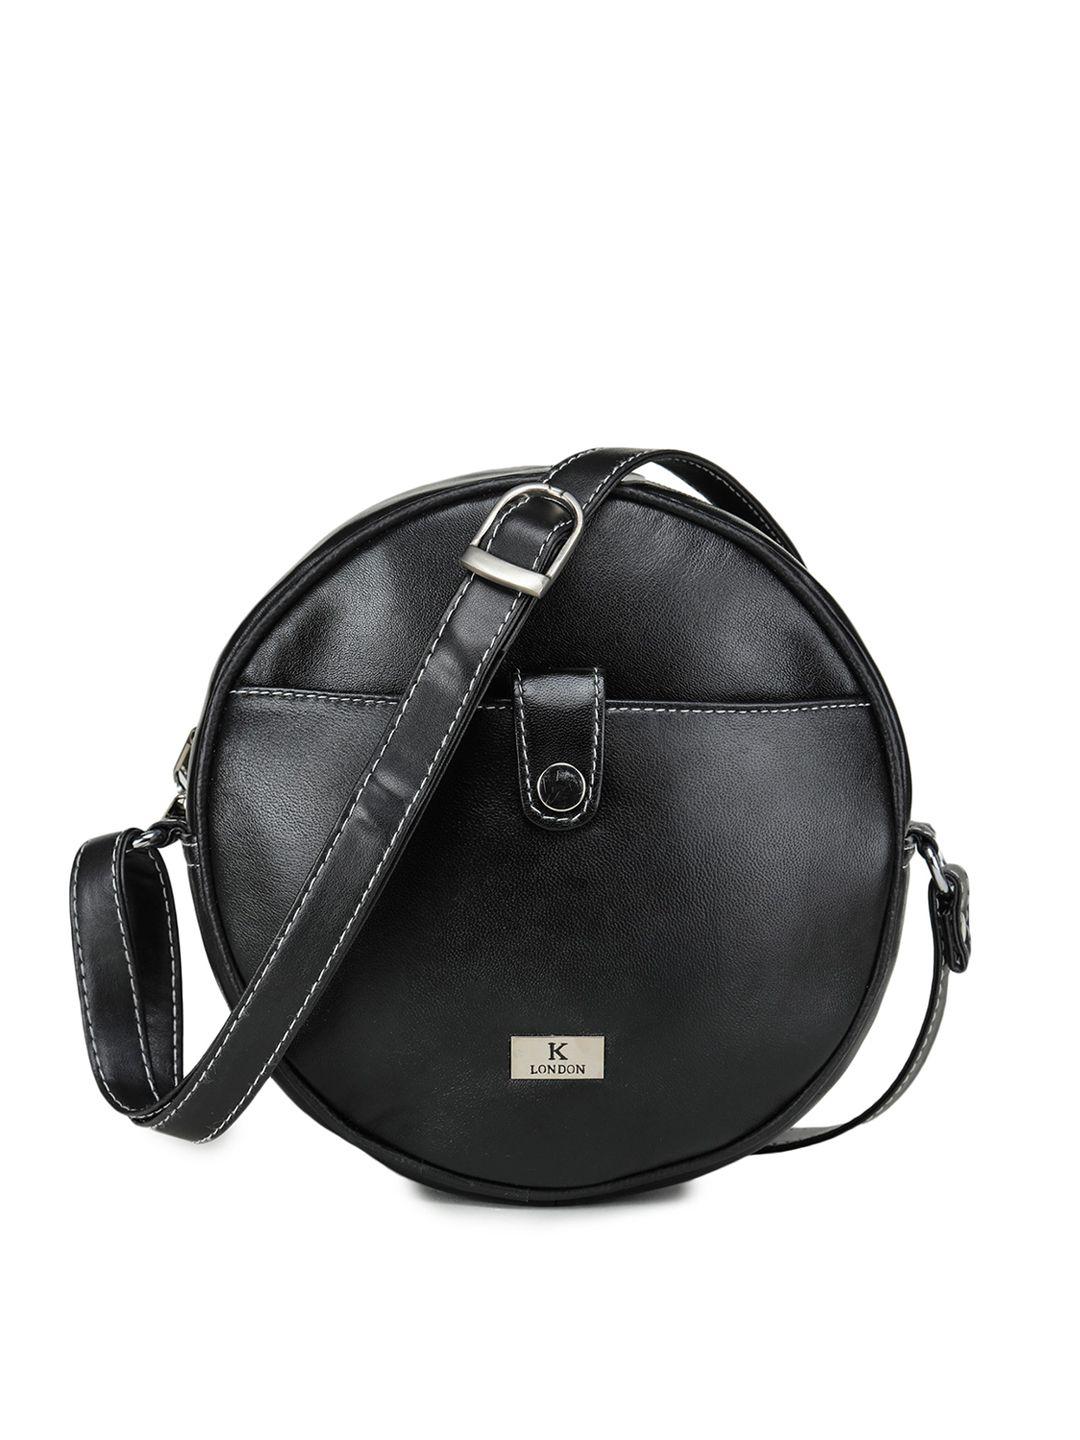 k london leather structured sling bag